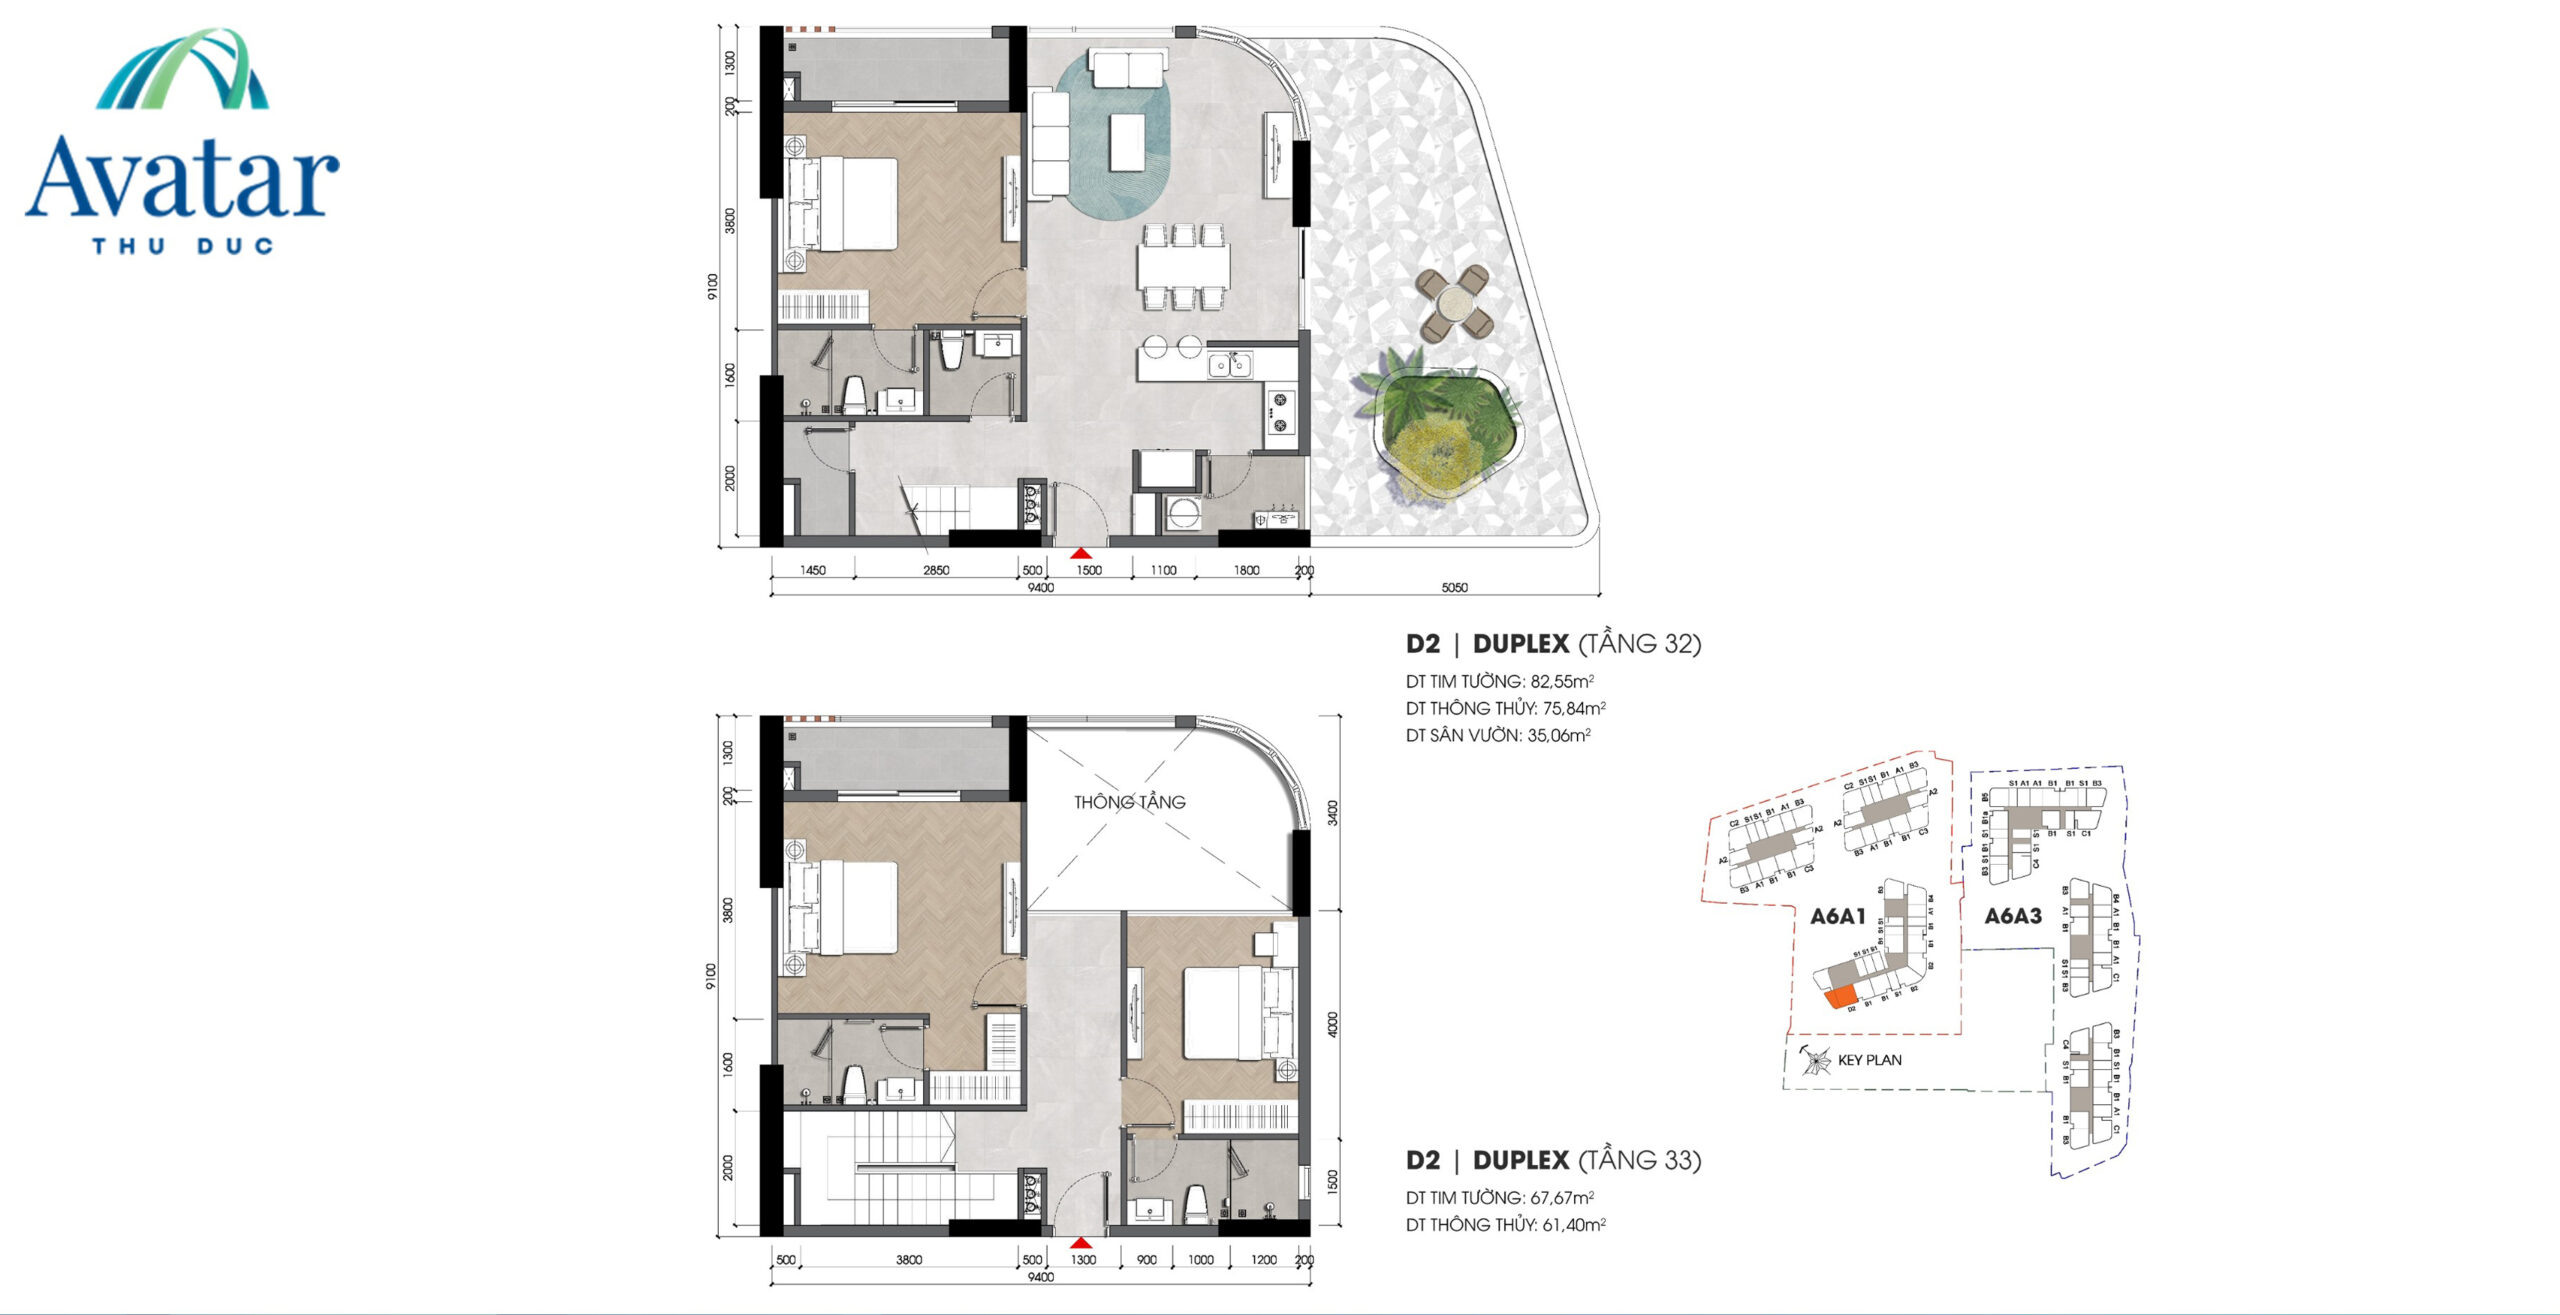 Thiết kế căn hộ Duplex Avatar Thủ Đức 1